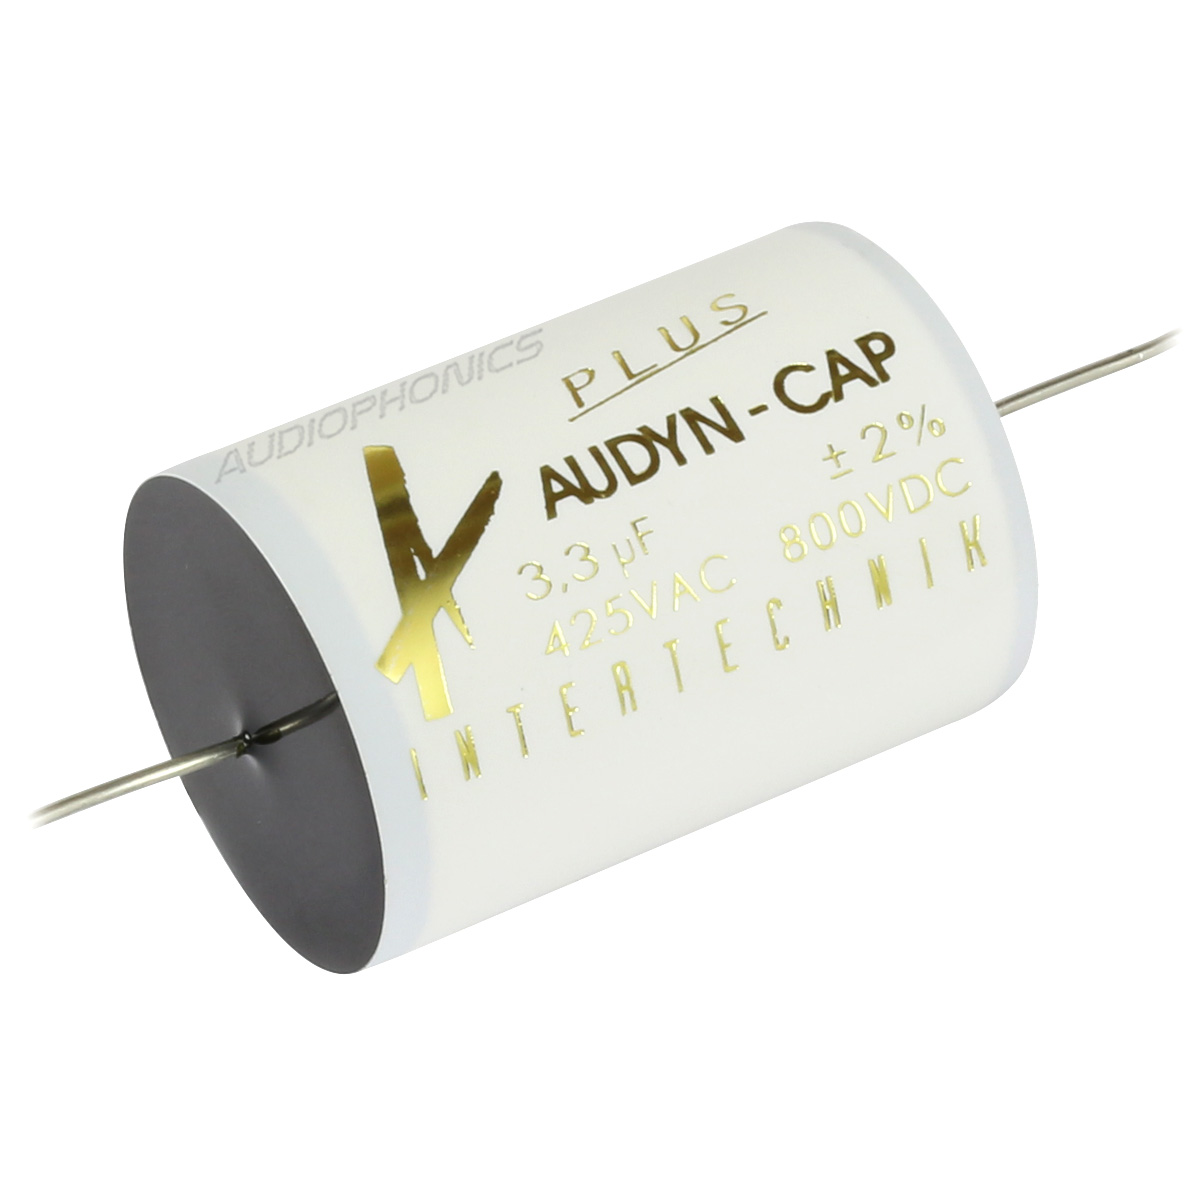 AUDYN CAP PLUS Capacitor 1200V 0.1µF